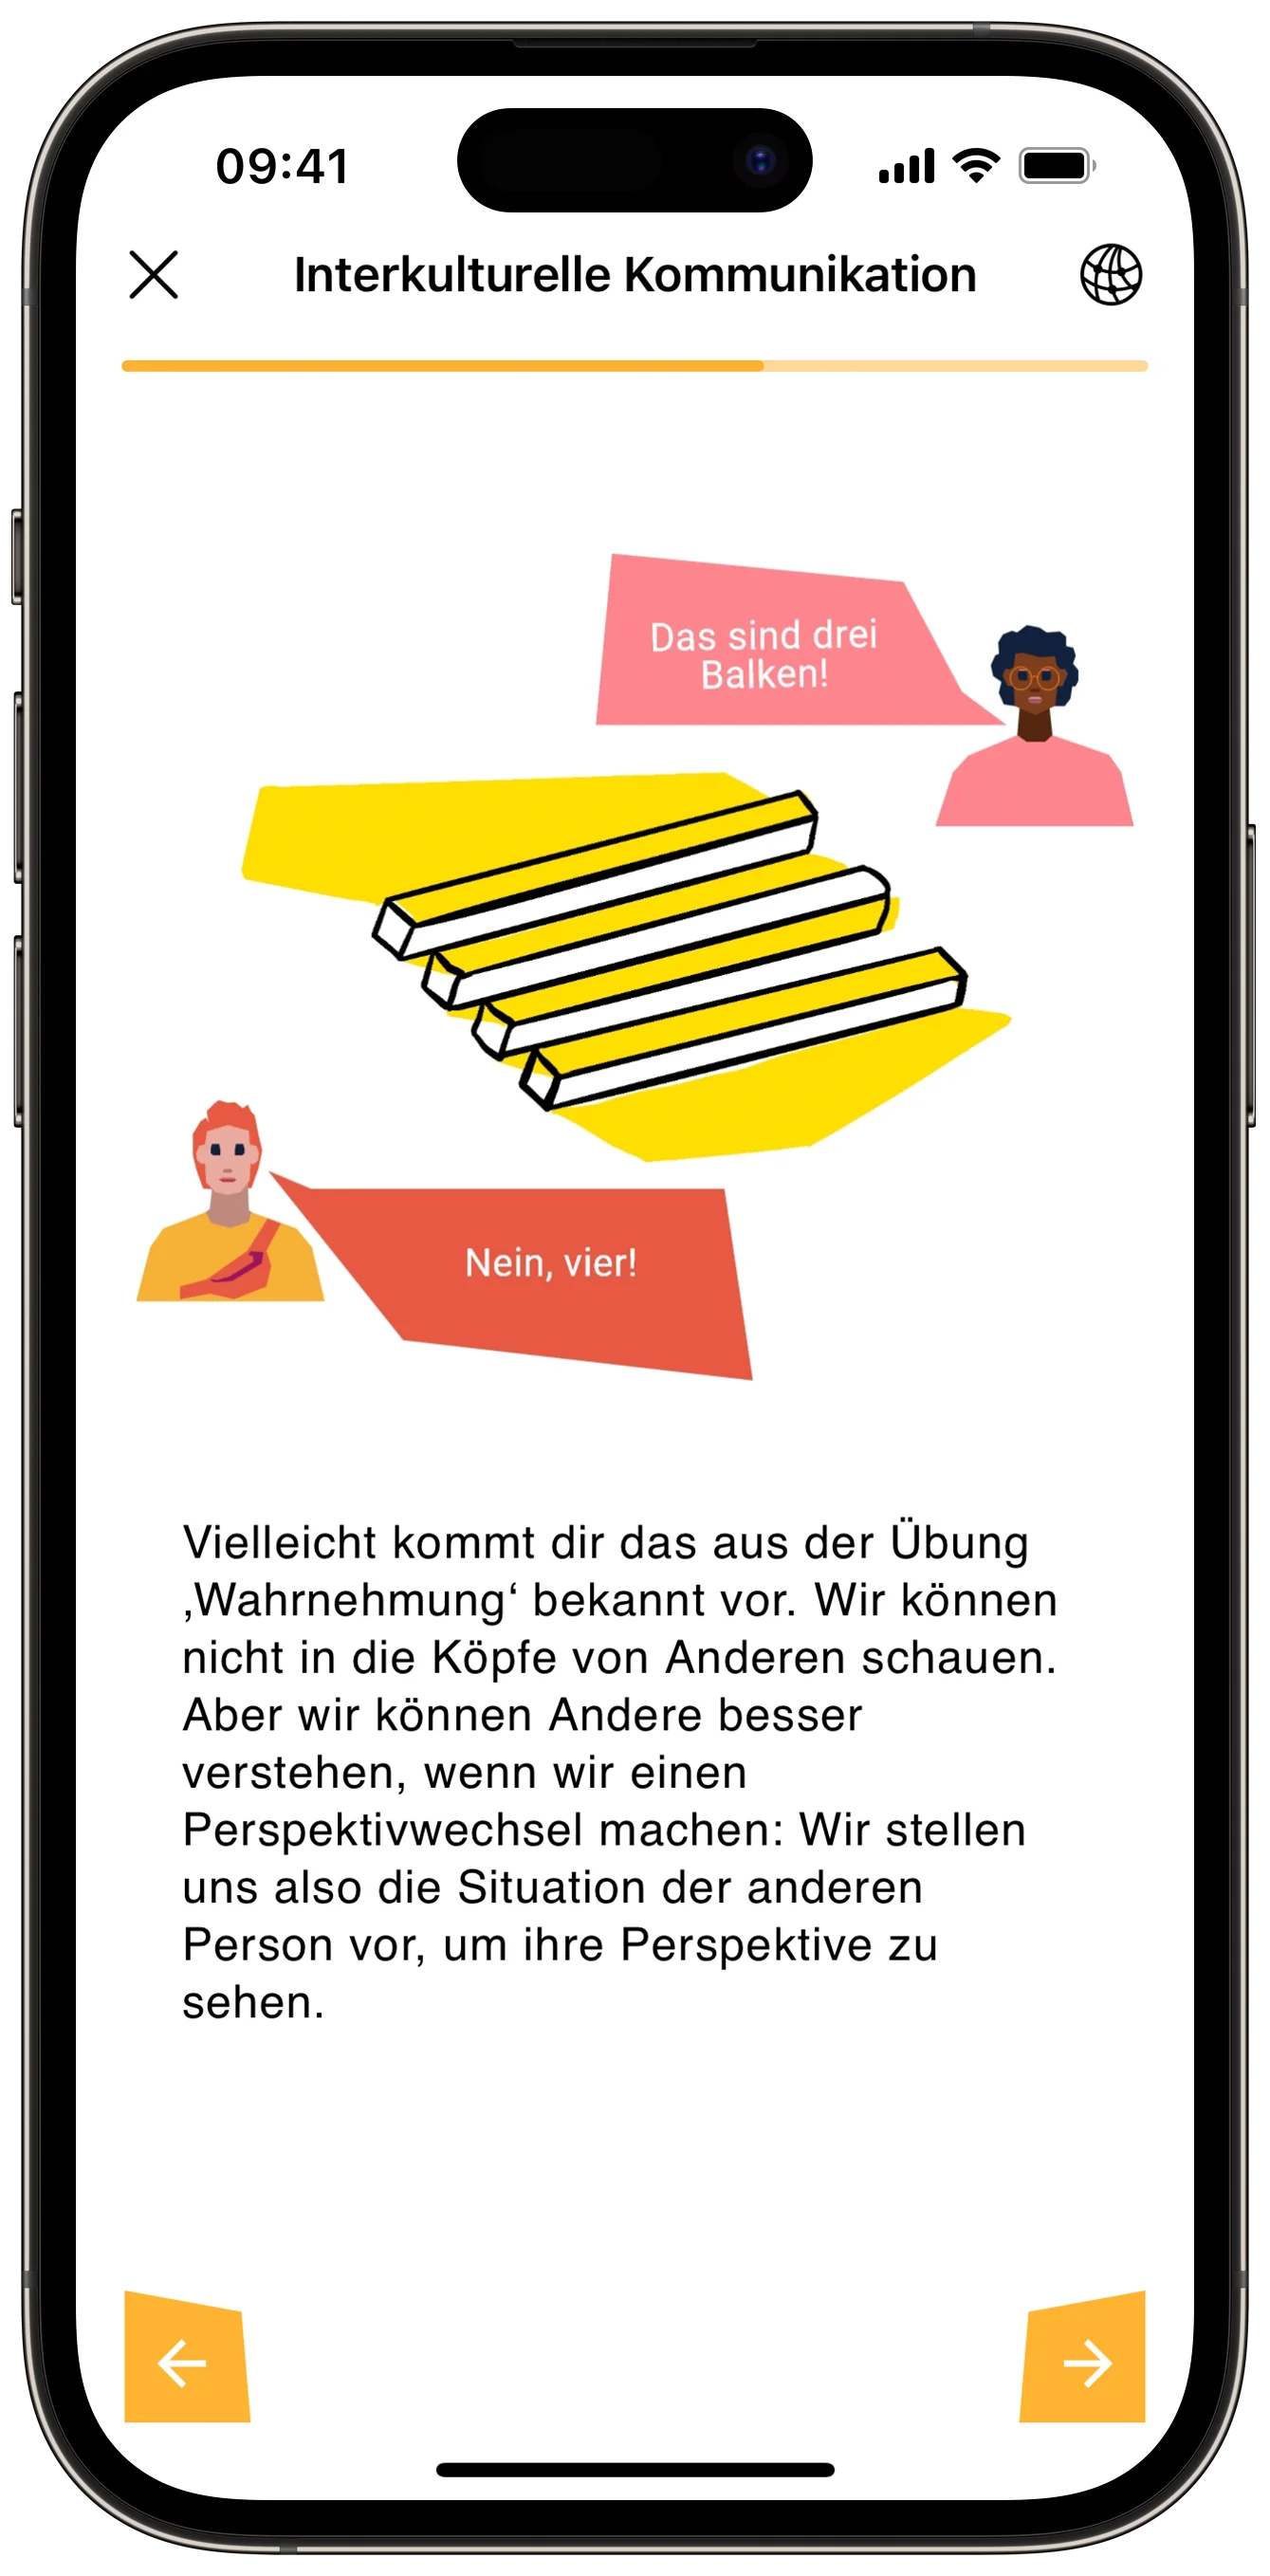 Drudel 11 AchSo! App als digitales Lernangebot für Zugewanderte